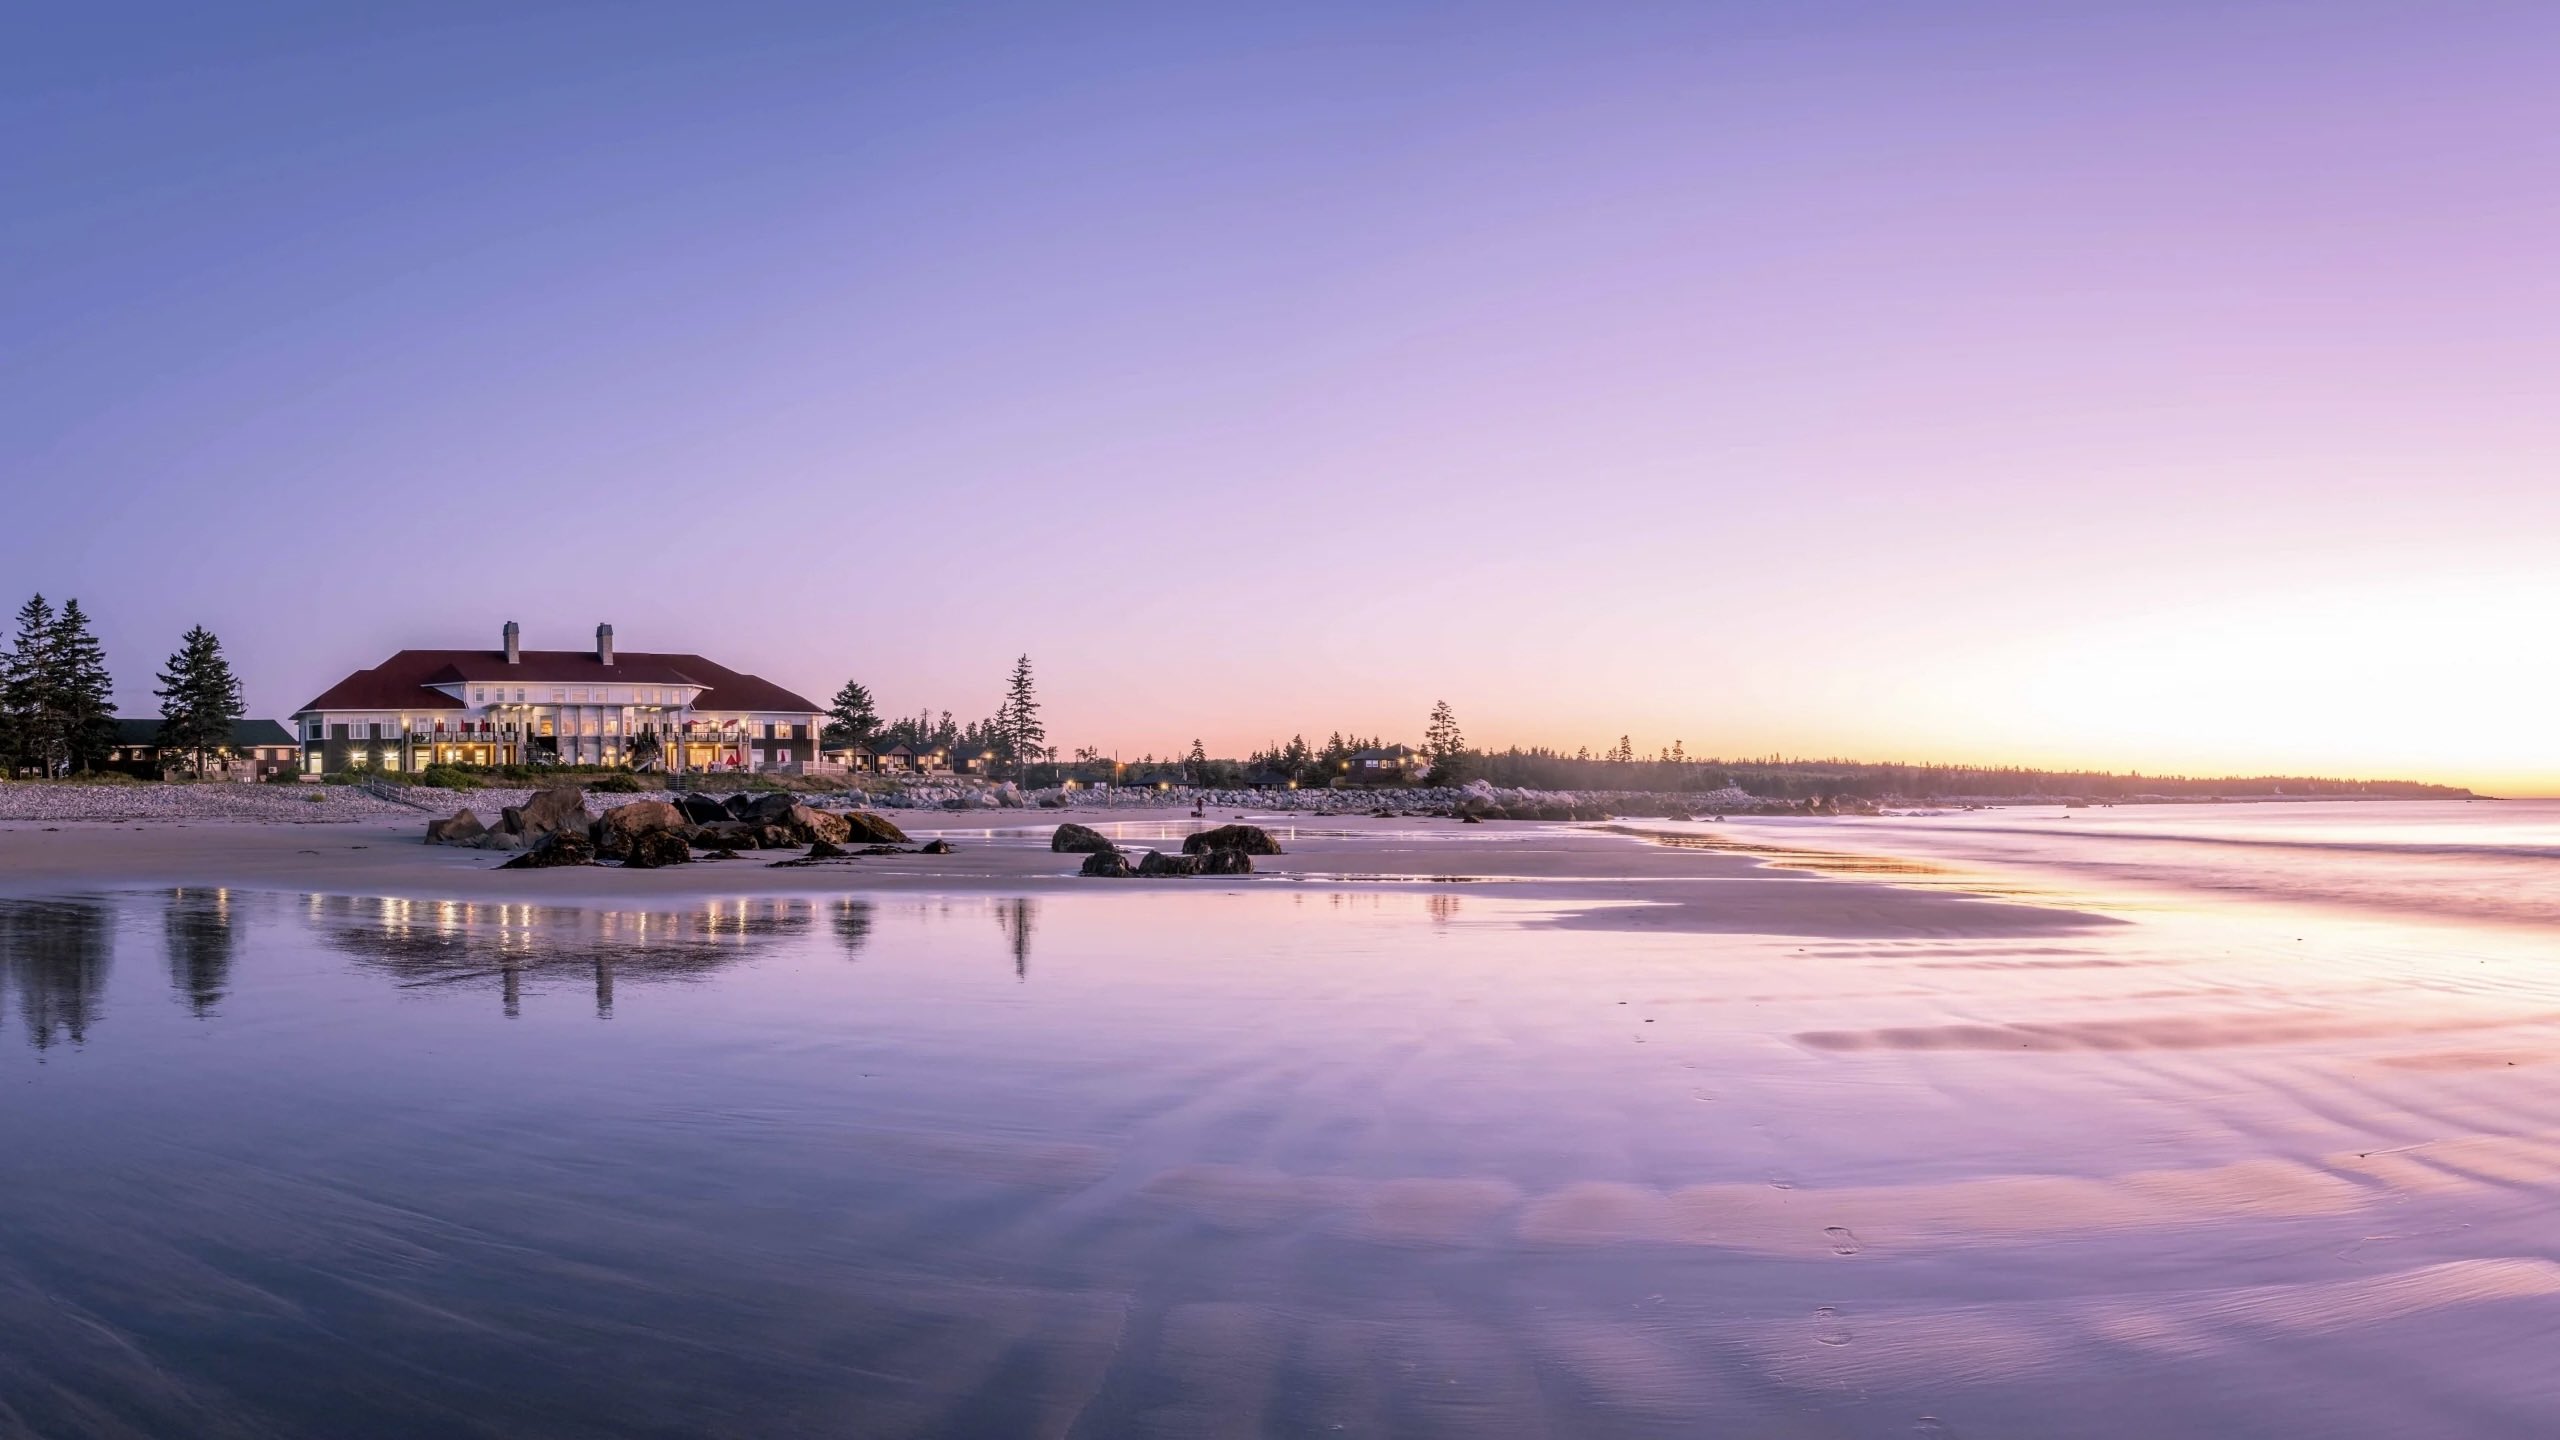 White Point BbeachResort at sunset at top luxury resorts in nova scotia 